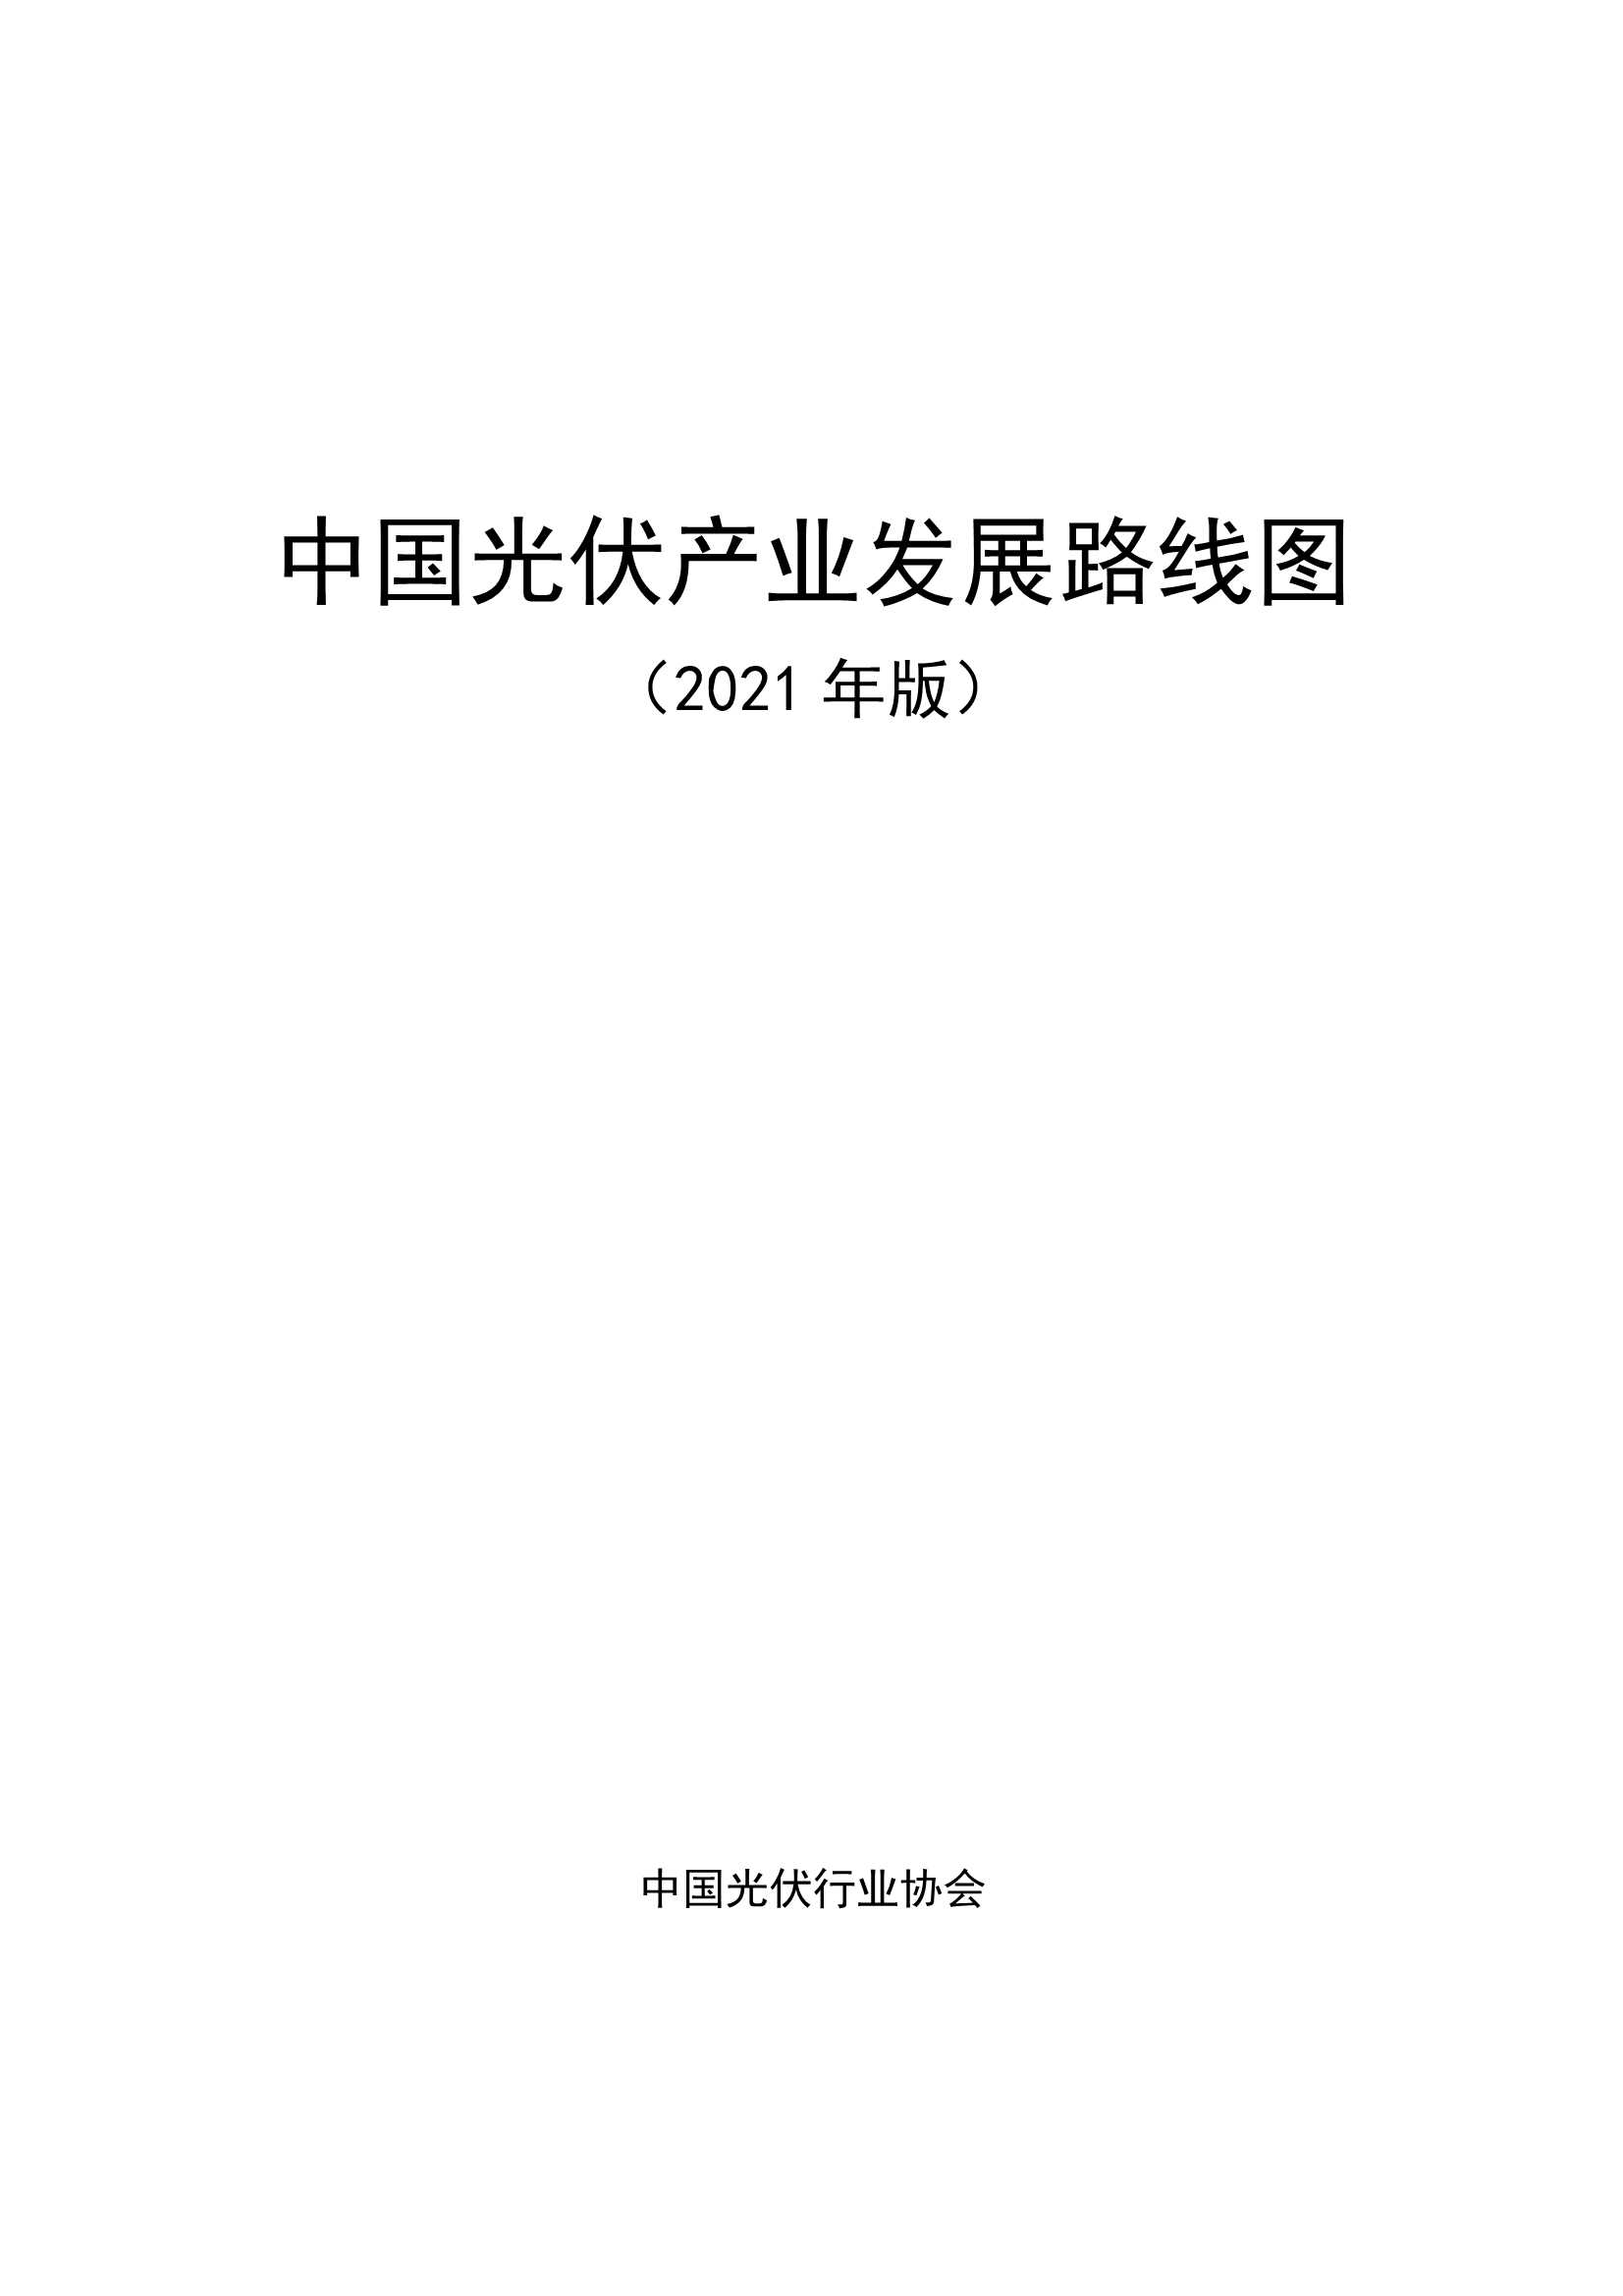 中国光伏行业协会-中国光伏产业发展路线图（2021年版）-2022.03-67页